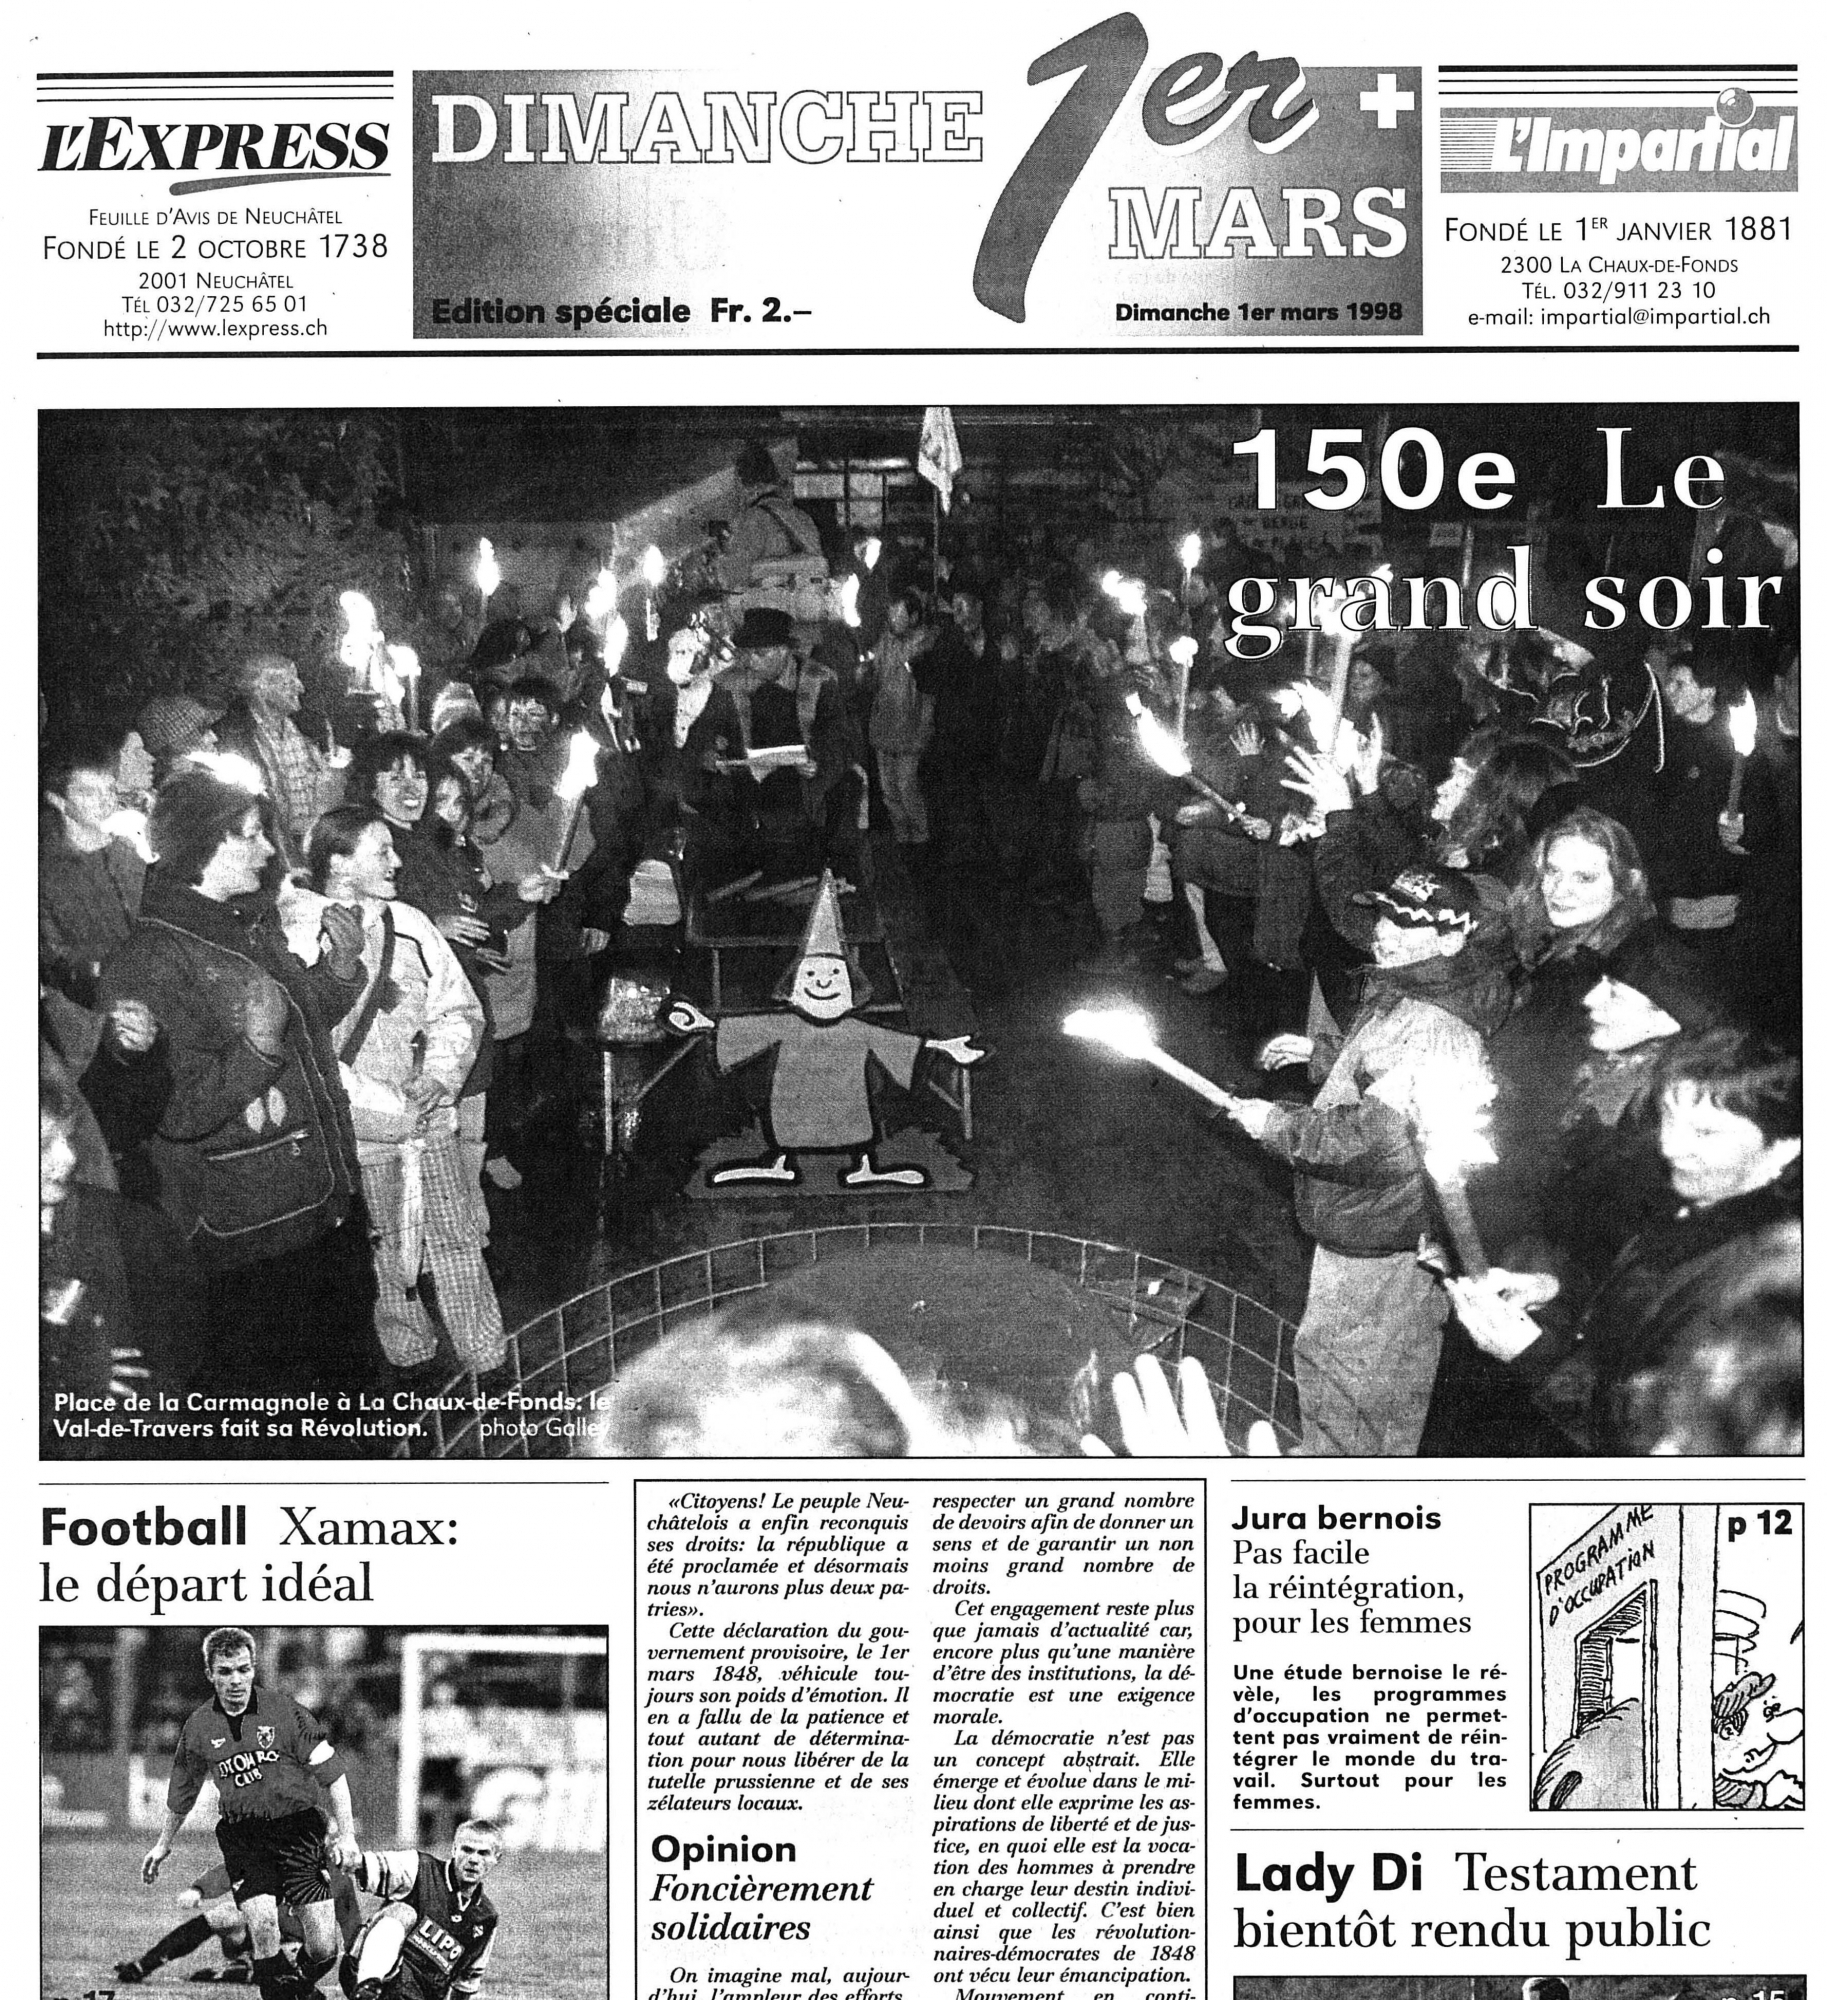 La "une" du numéro spécial publié par "L'Impartial" et "L'Express" le dimanche 1er mars 1998.